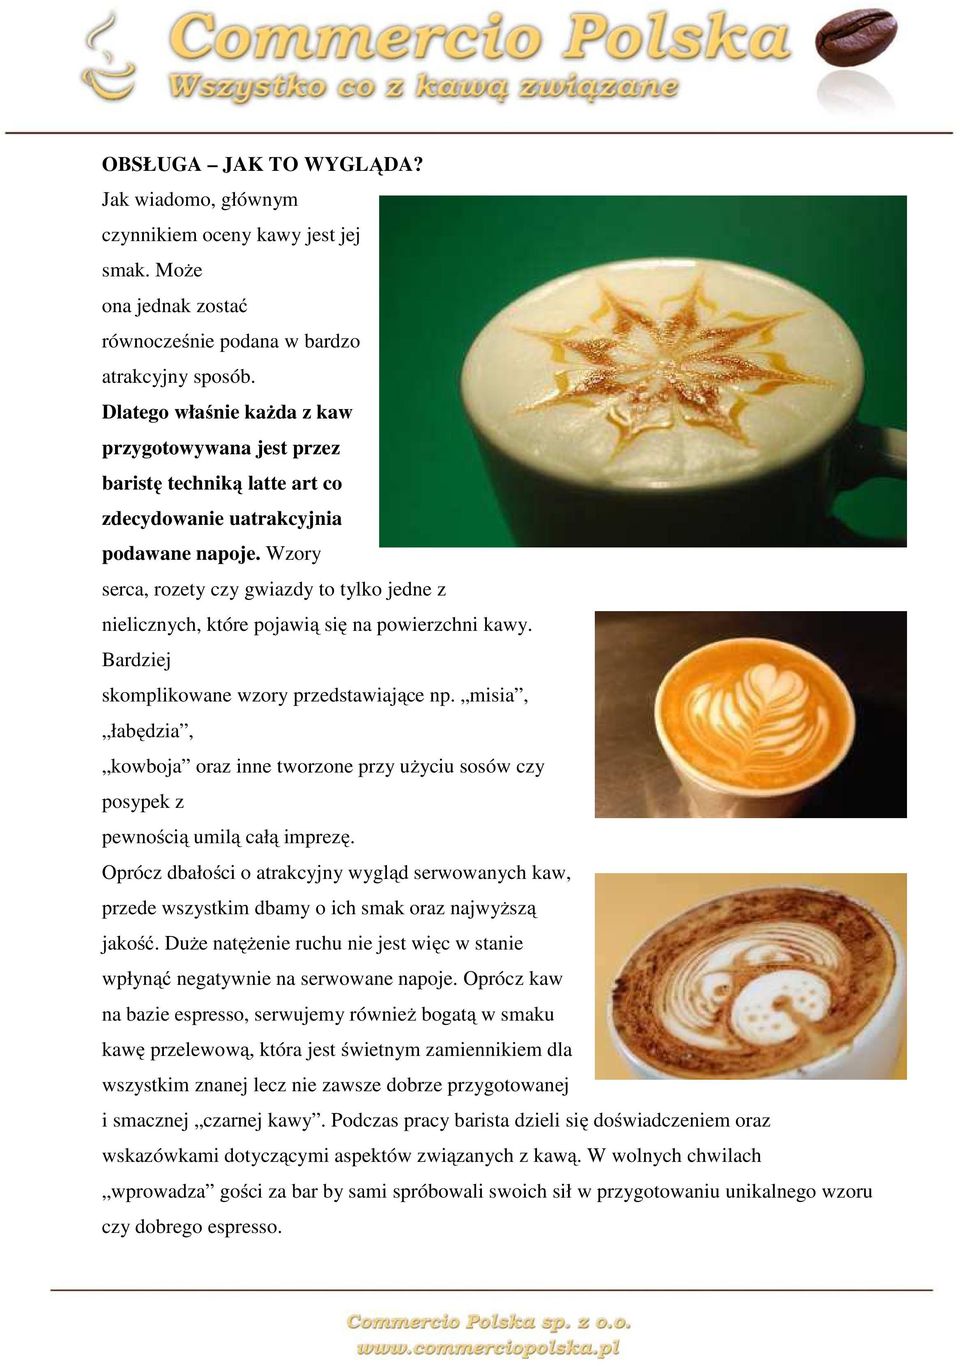 Wzory serca, rozety czy gwiazdy to tylko jedne z nielicznych, które pojawią się na powierzchni kawy. Bardziej skomplikowane wzory przedstawiające np.